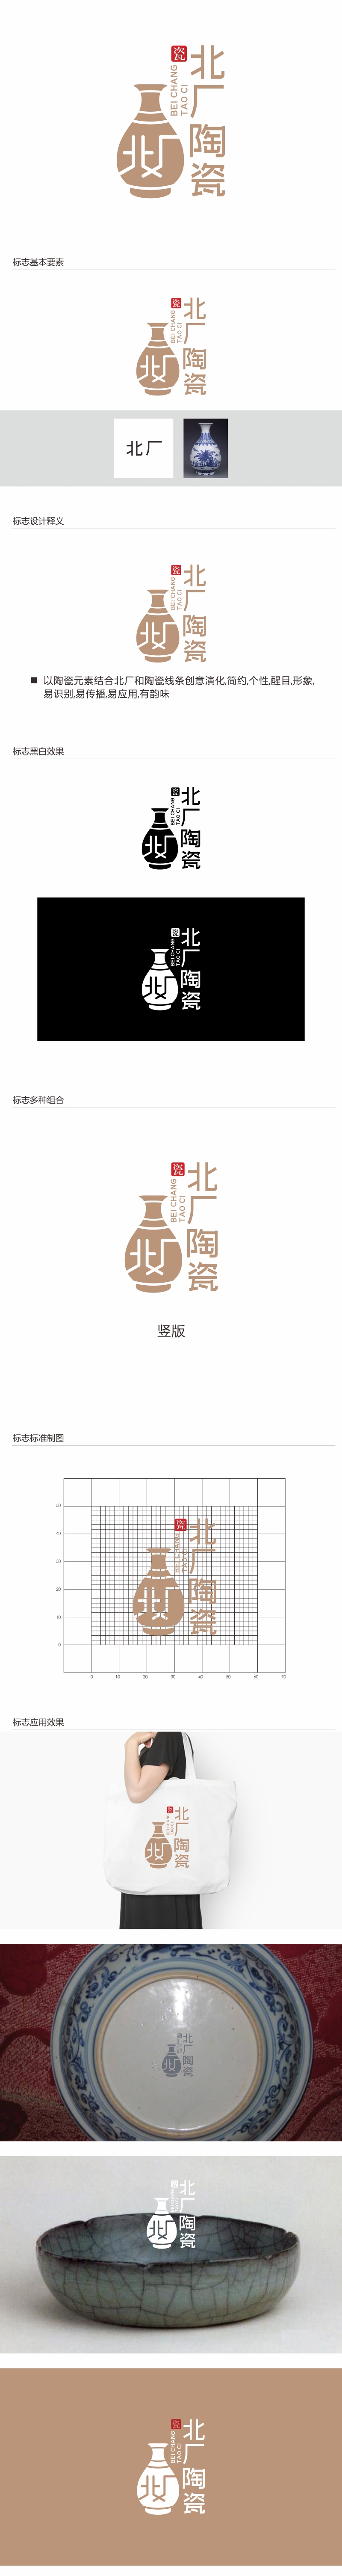 林思源的北厂陶瓷logo设计